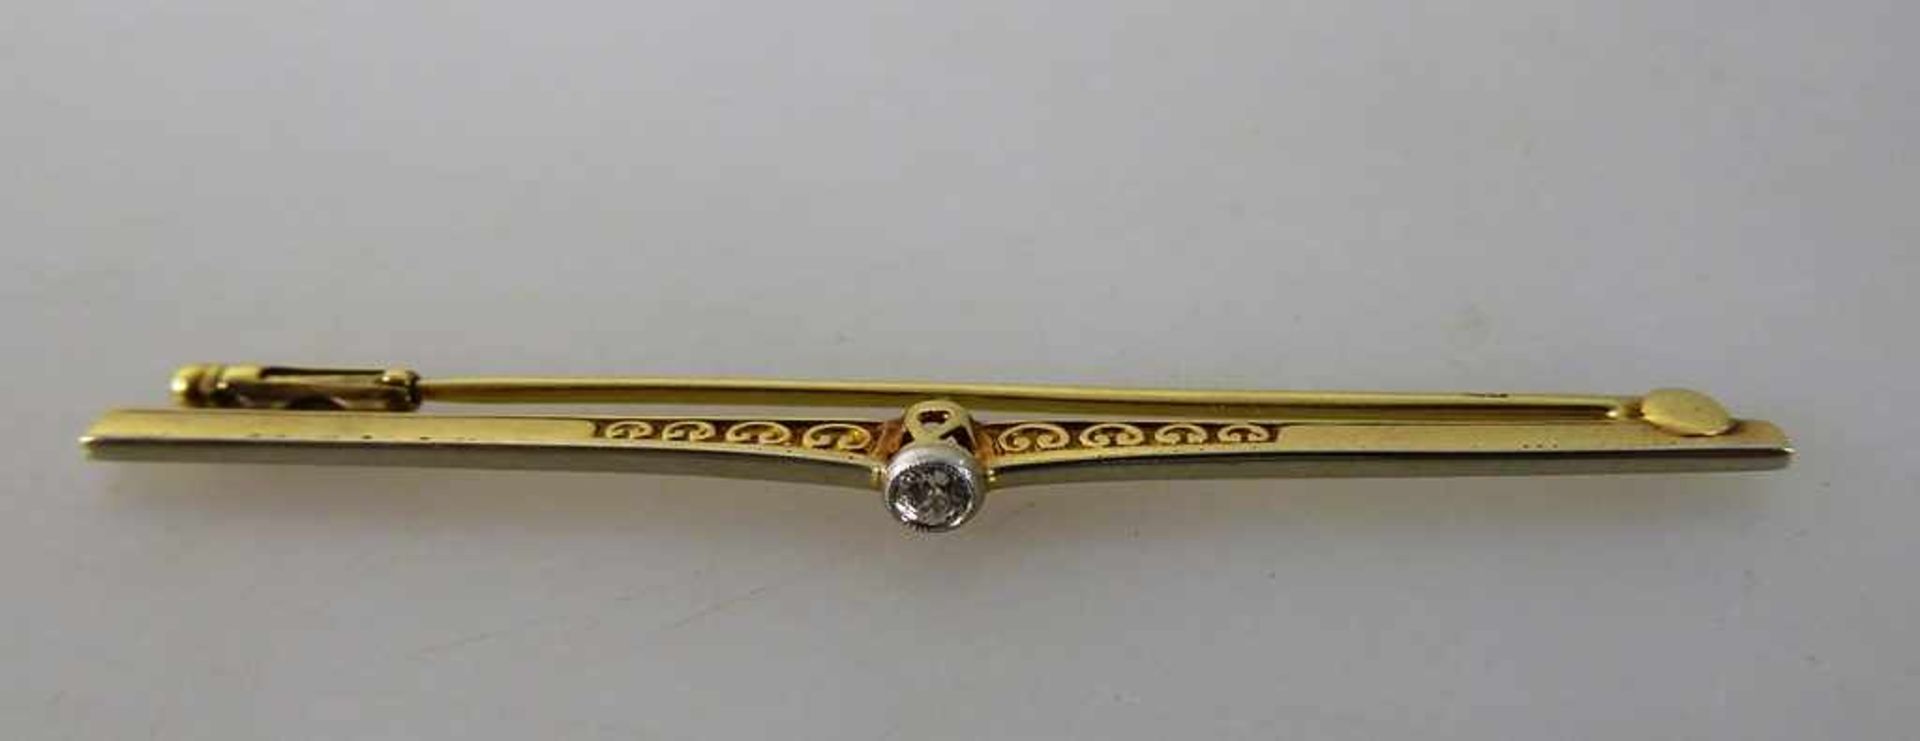 Stabbrosche mit Diamant, Gelbgold 585, l. 58mm, 3g